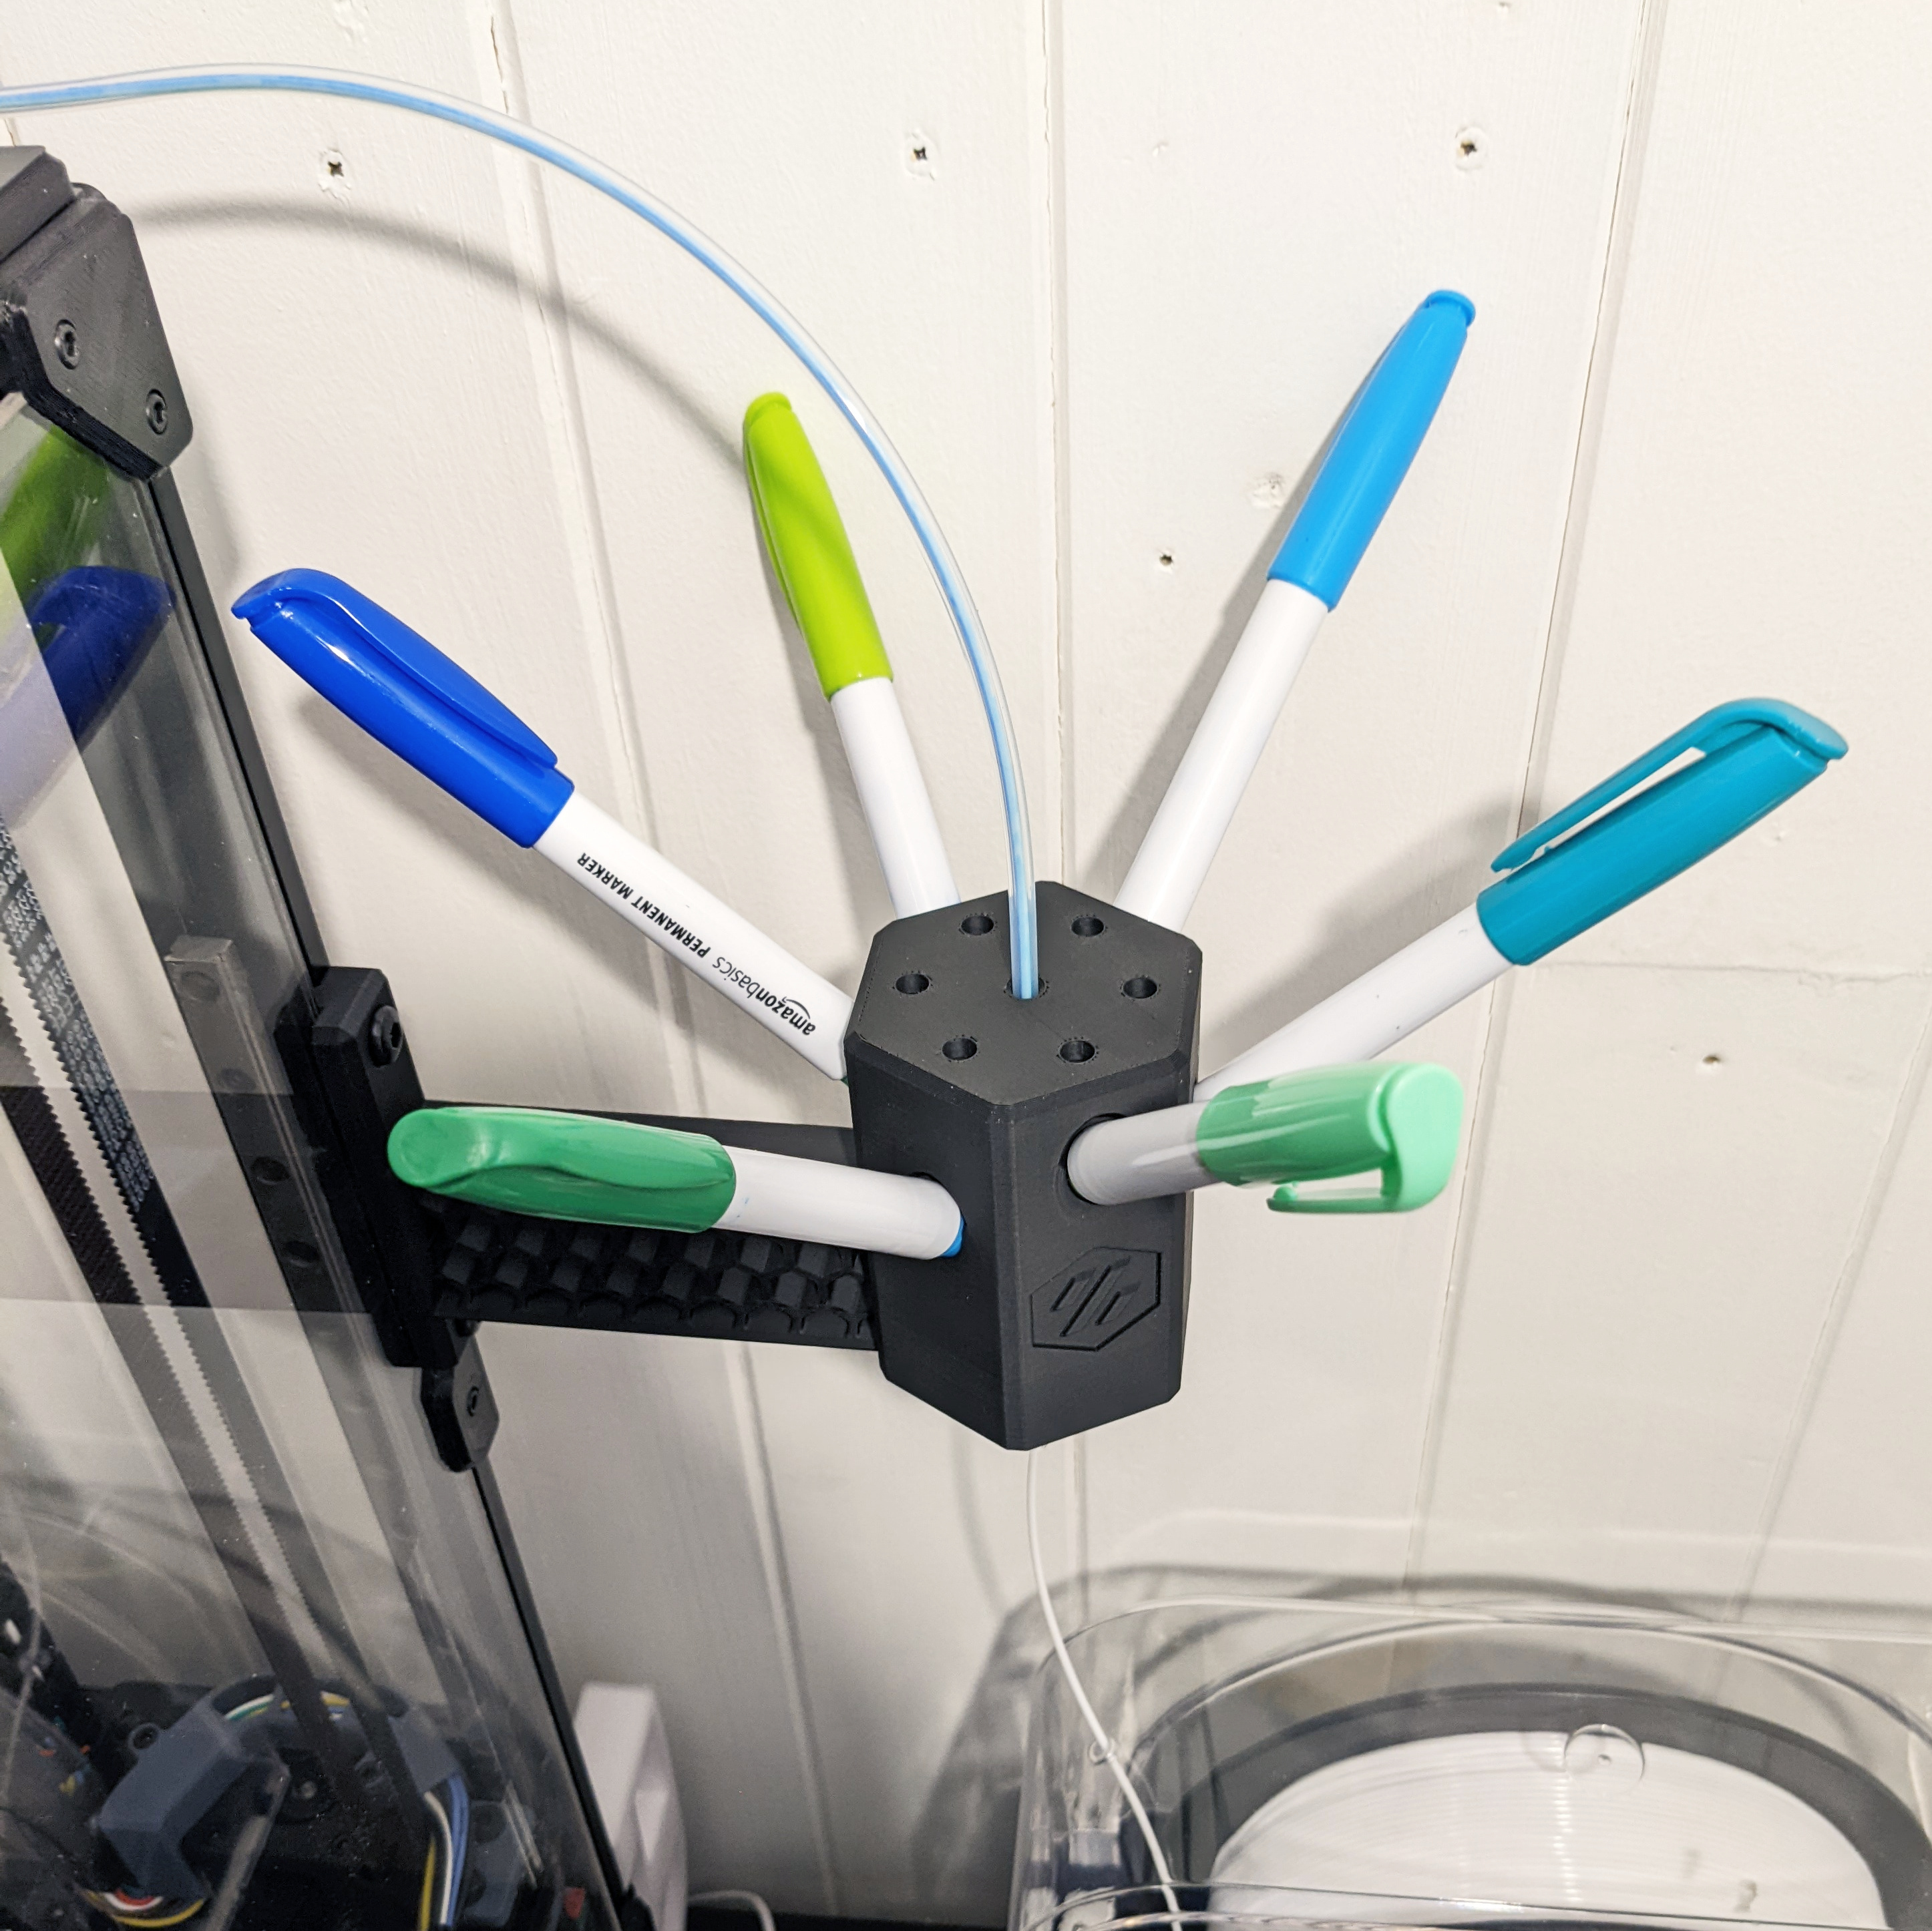 Sharpie filament colorizer - six pens voron looks